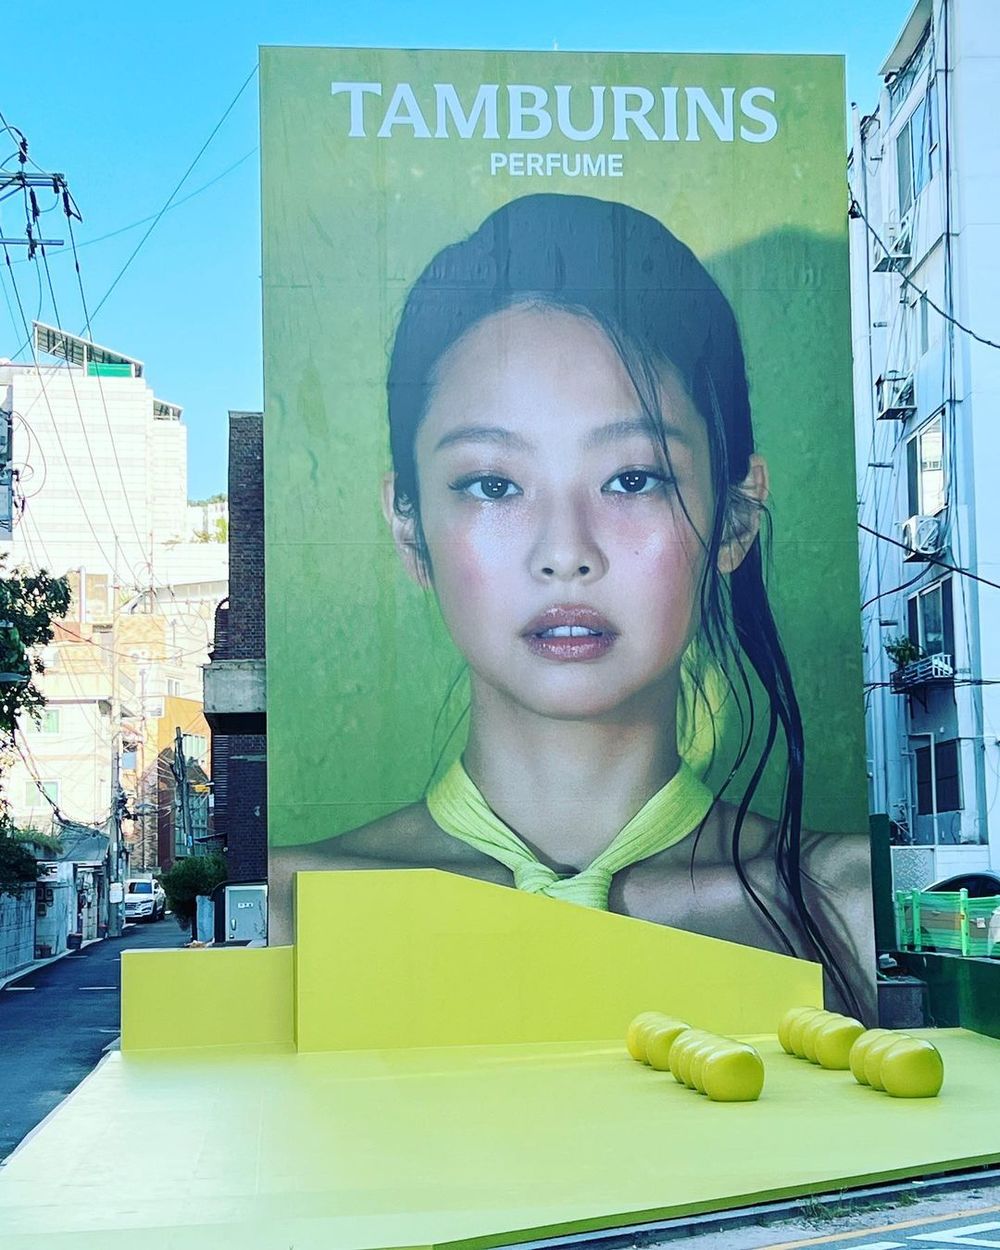  
Nhãn hàng đặt biển quảng cáo khổng lồ tại Seoul. (Ảnh: Koreaboo)